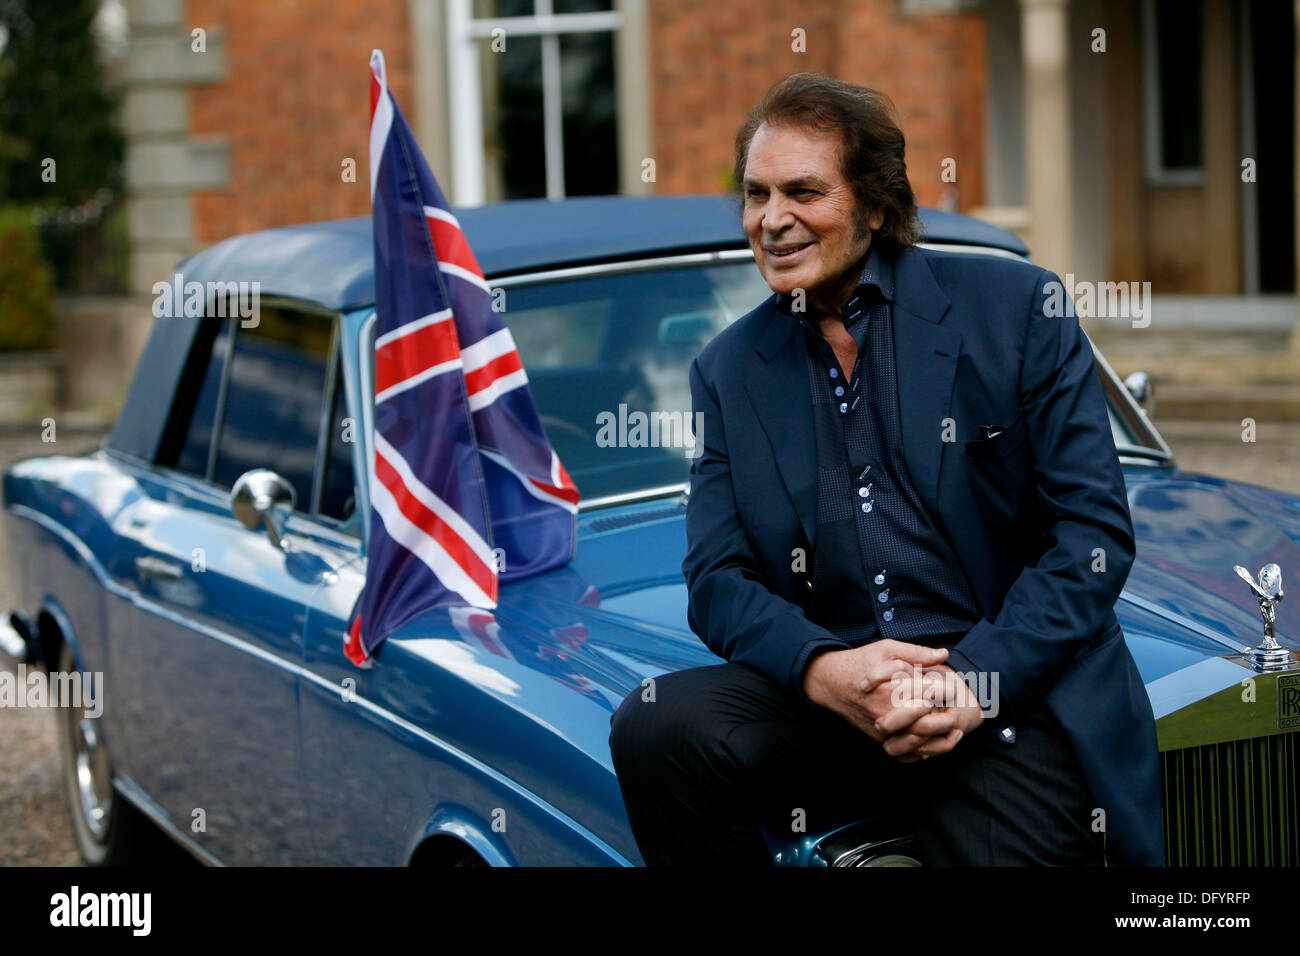 Britische Pop-Sängerin Engelbert Humperdinck posiert für ein Foto neben seinem Auto und ein Union Jack-Flagge bei einem Fototermin Stockfoto